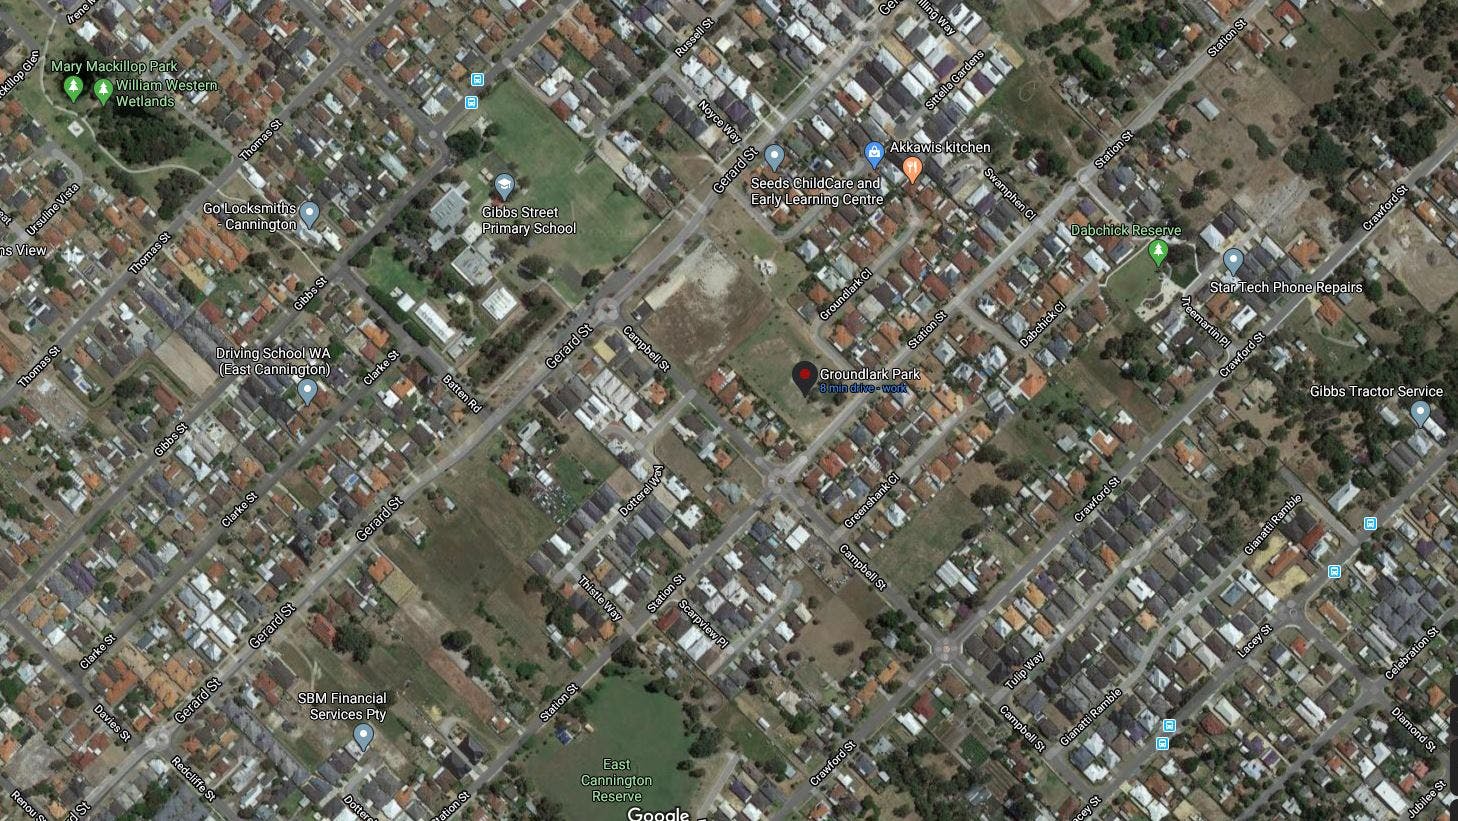 Groundlark Park Map - Satellite View.JPG